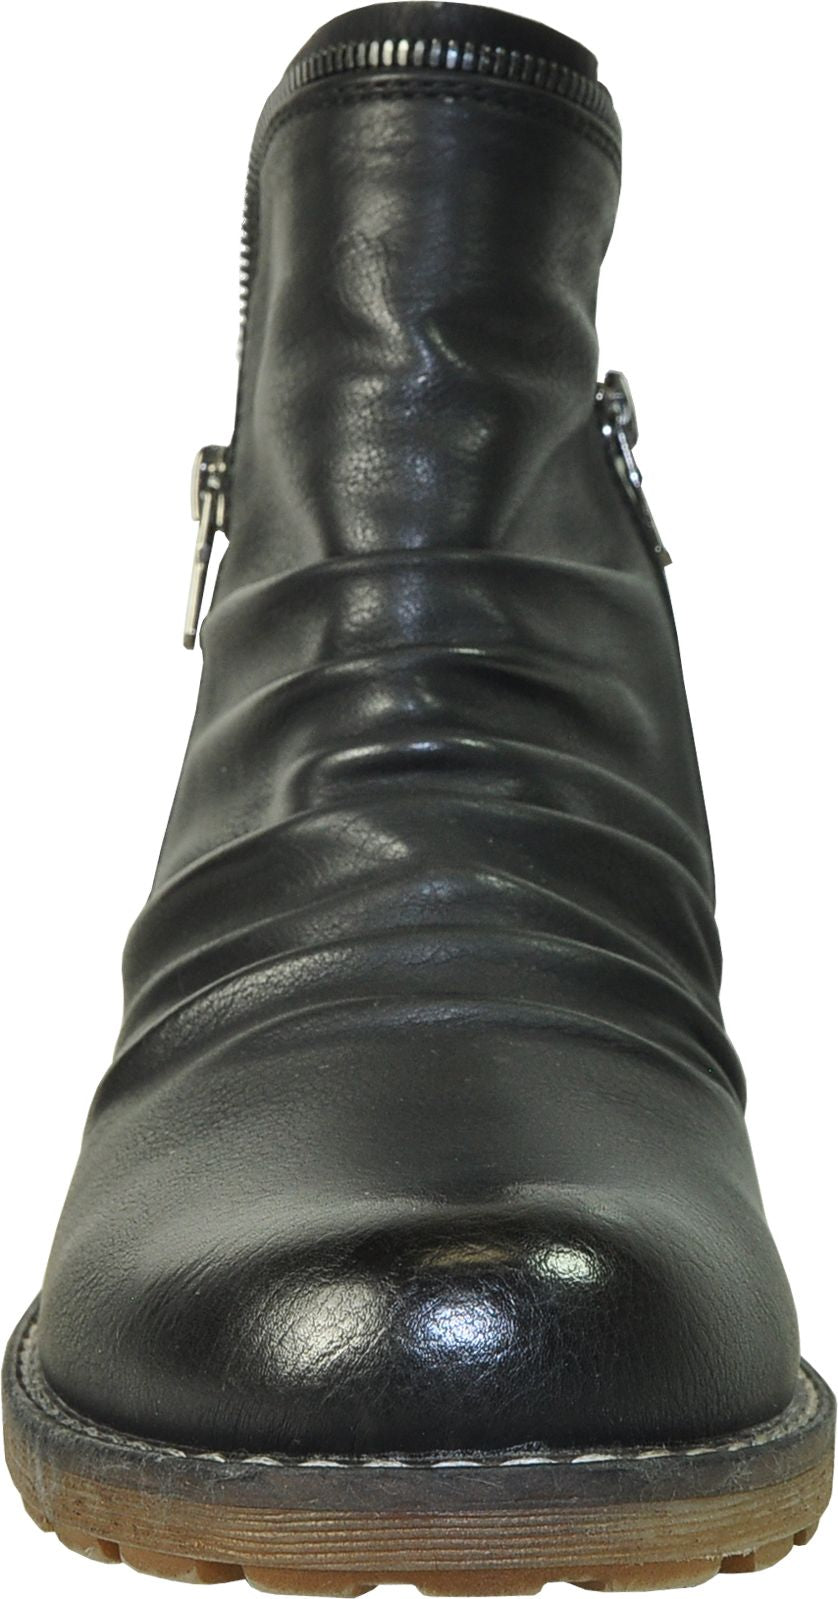 Vangelo Boots Hf9435 Black